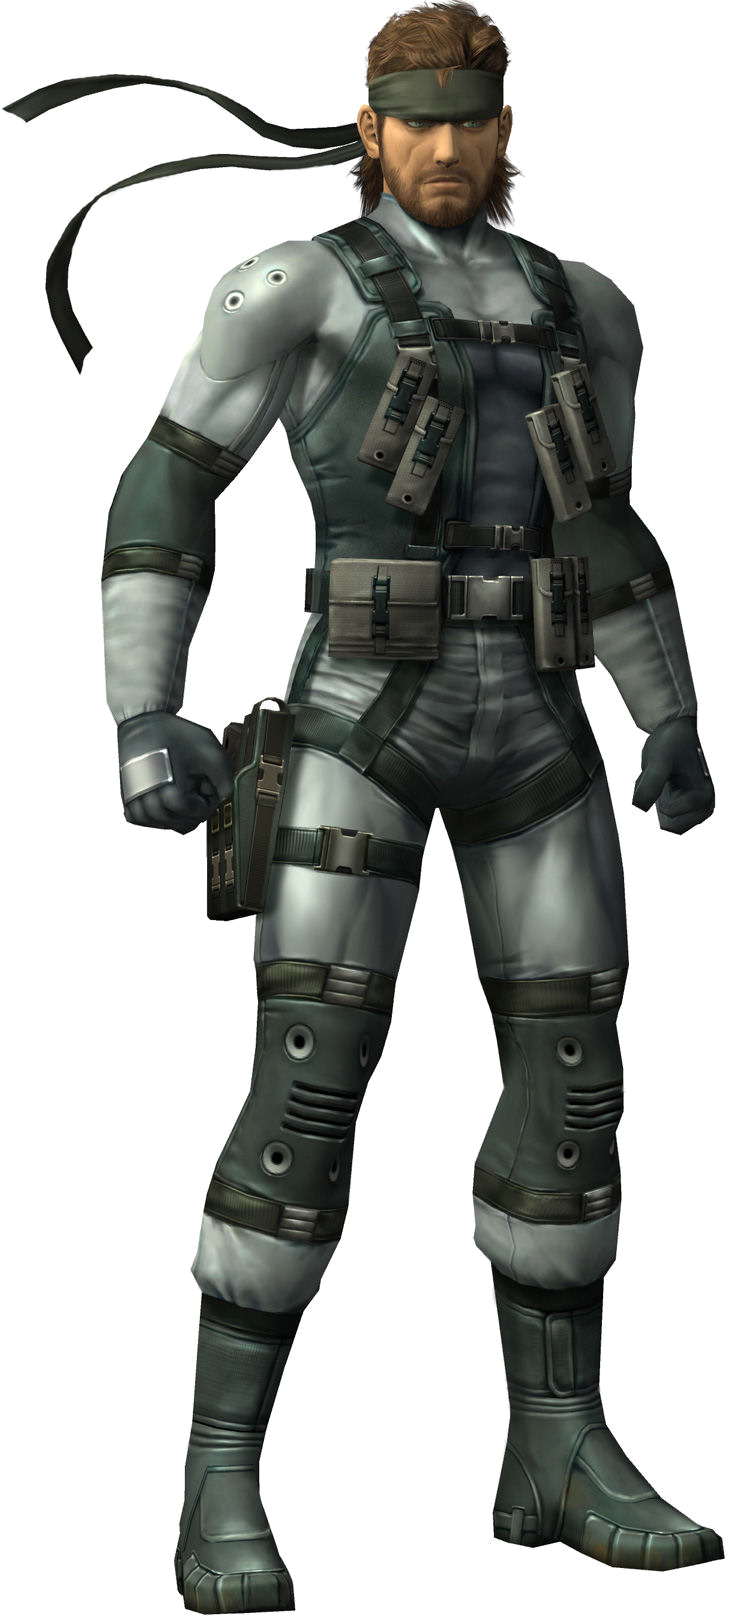 メタルギア Metaru Gia (Metal Gear)